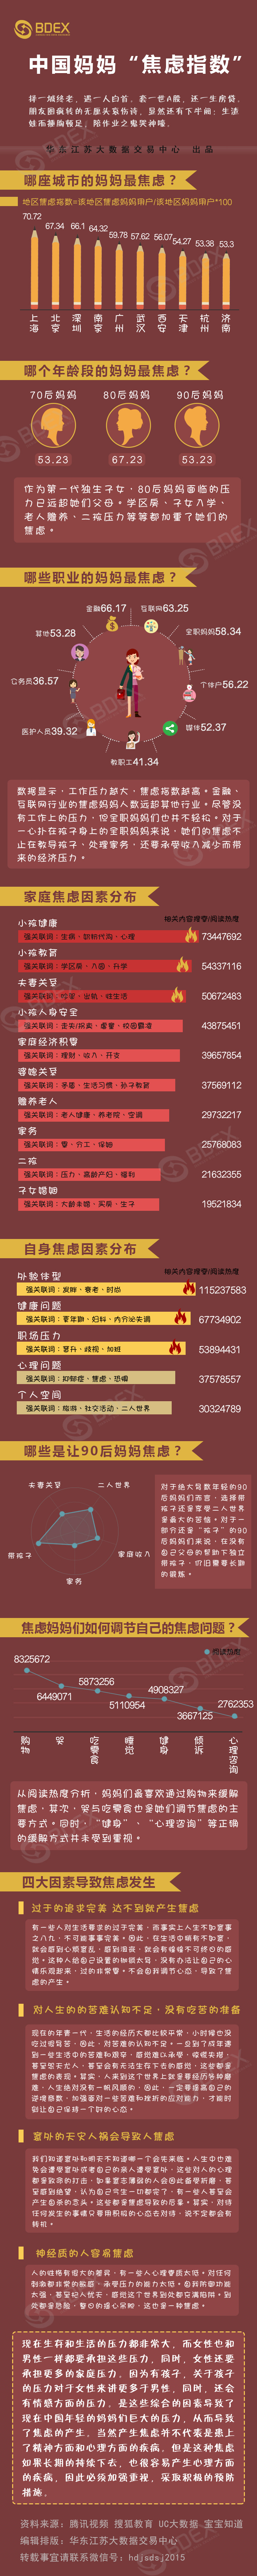 20170605中国妈妈“焦虑指数”报告.jpg